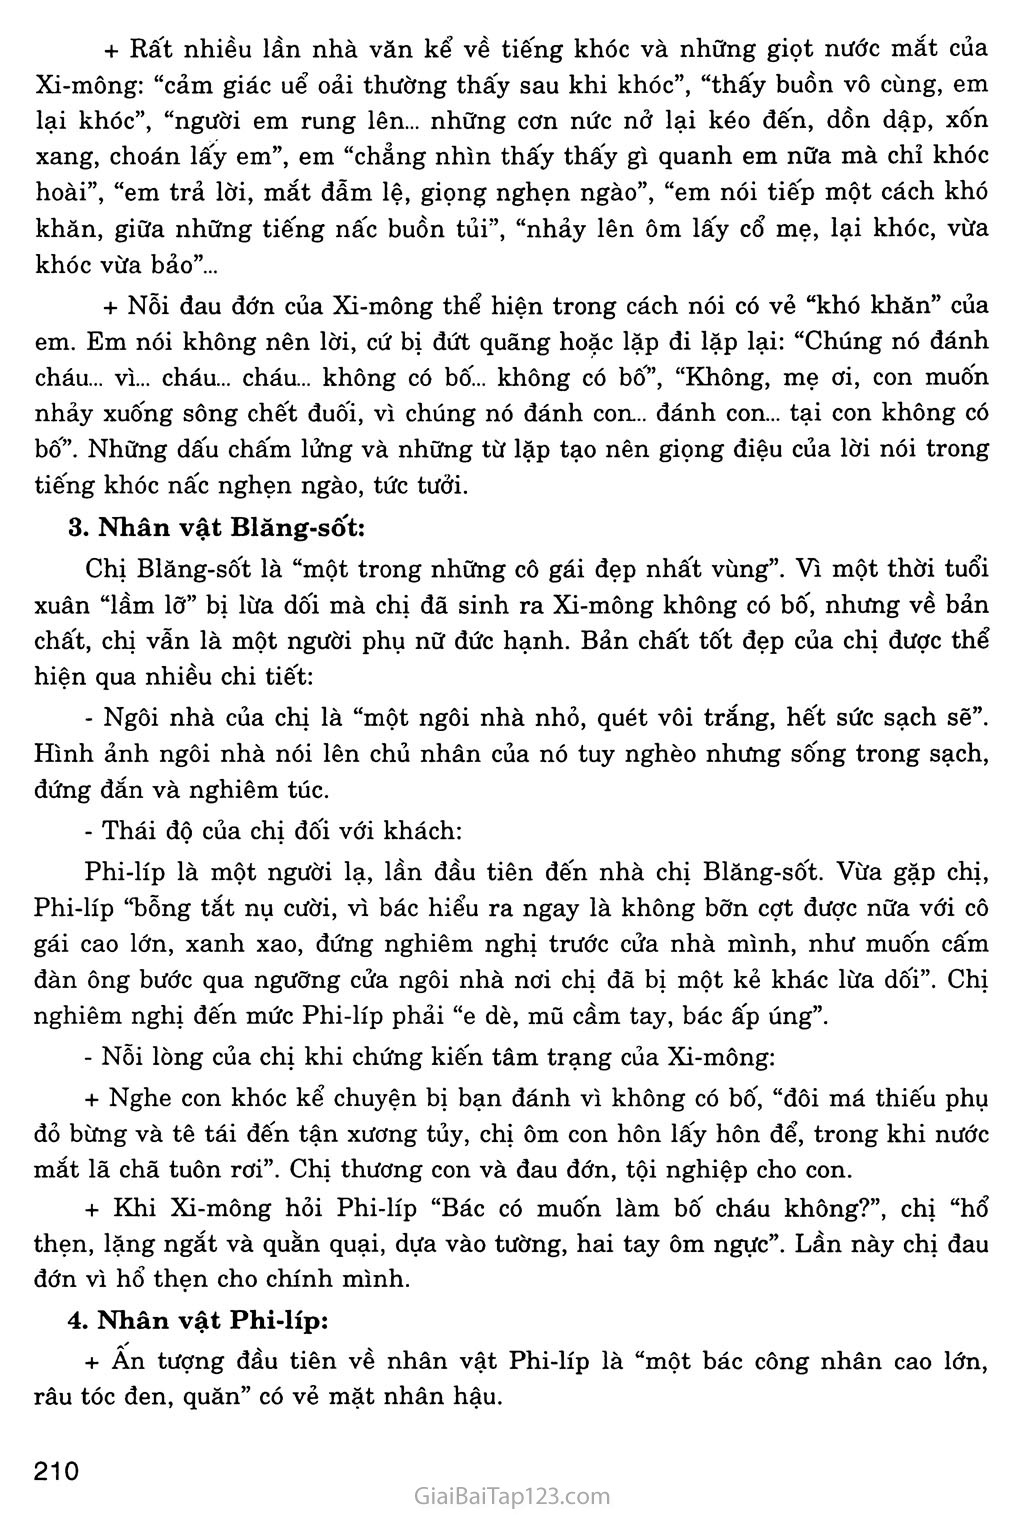 Bố của Xi - mông (trích) trang 2